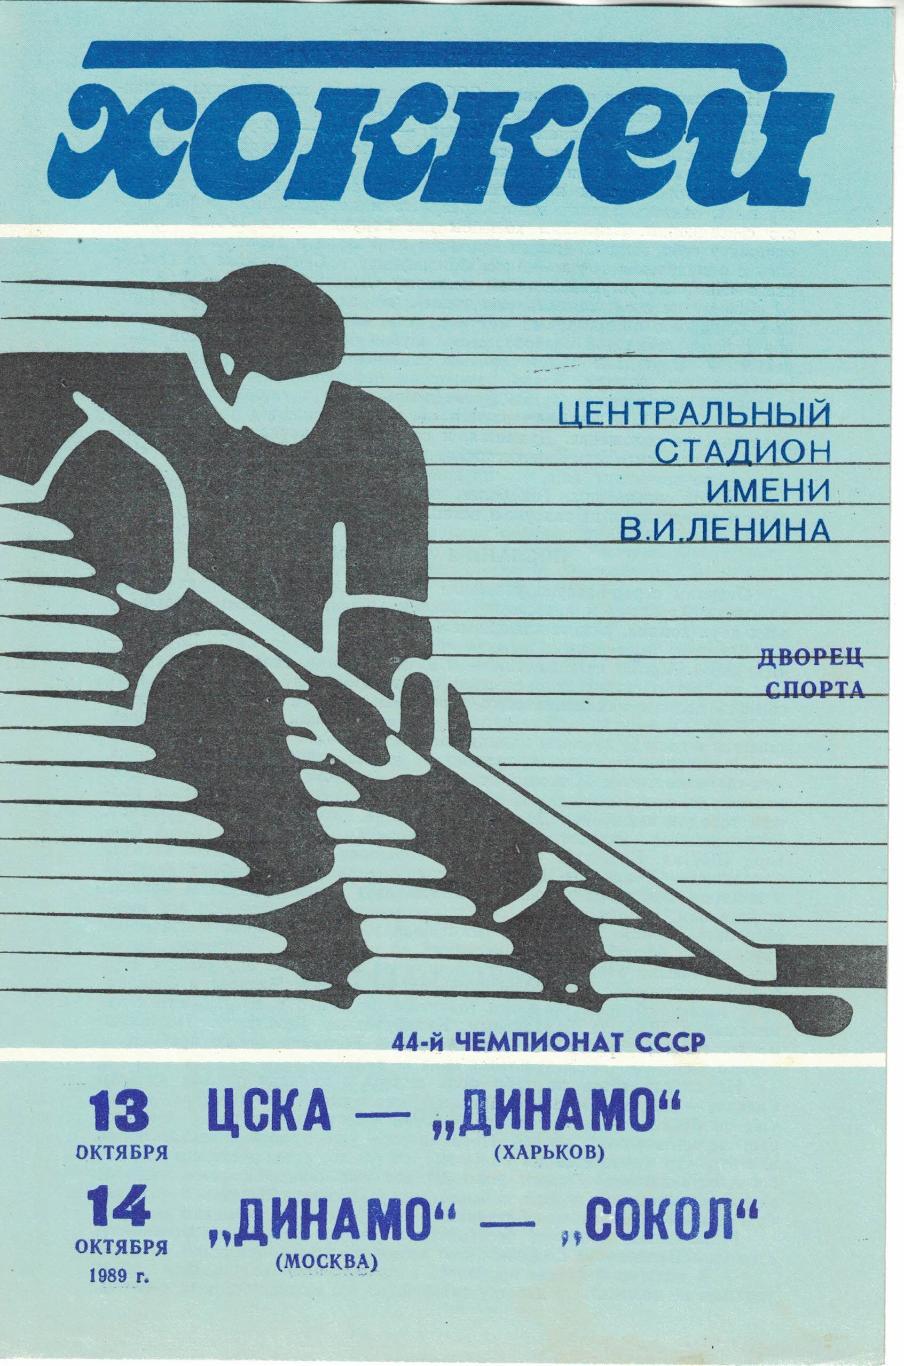 ЦСКА - Динамо Харьков, Динамо Москва - Сокол Киев 13/14.10.1989. Чемпионат СССР